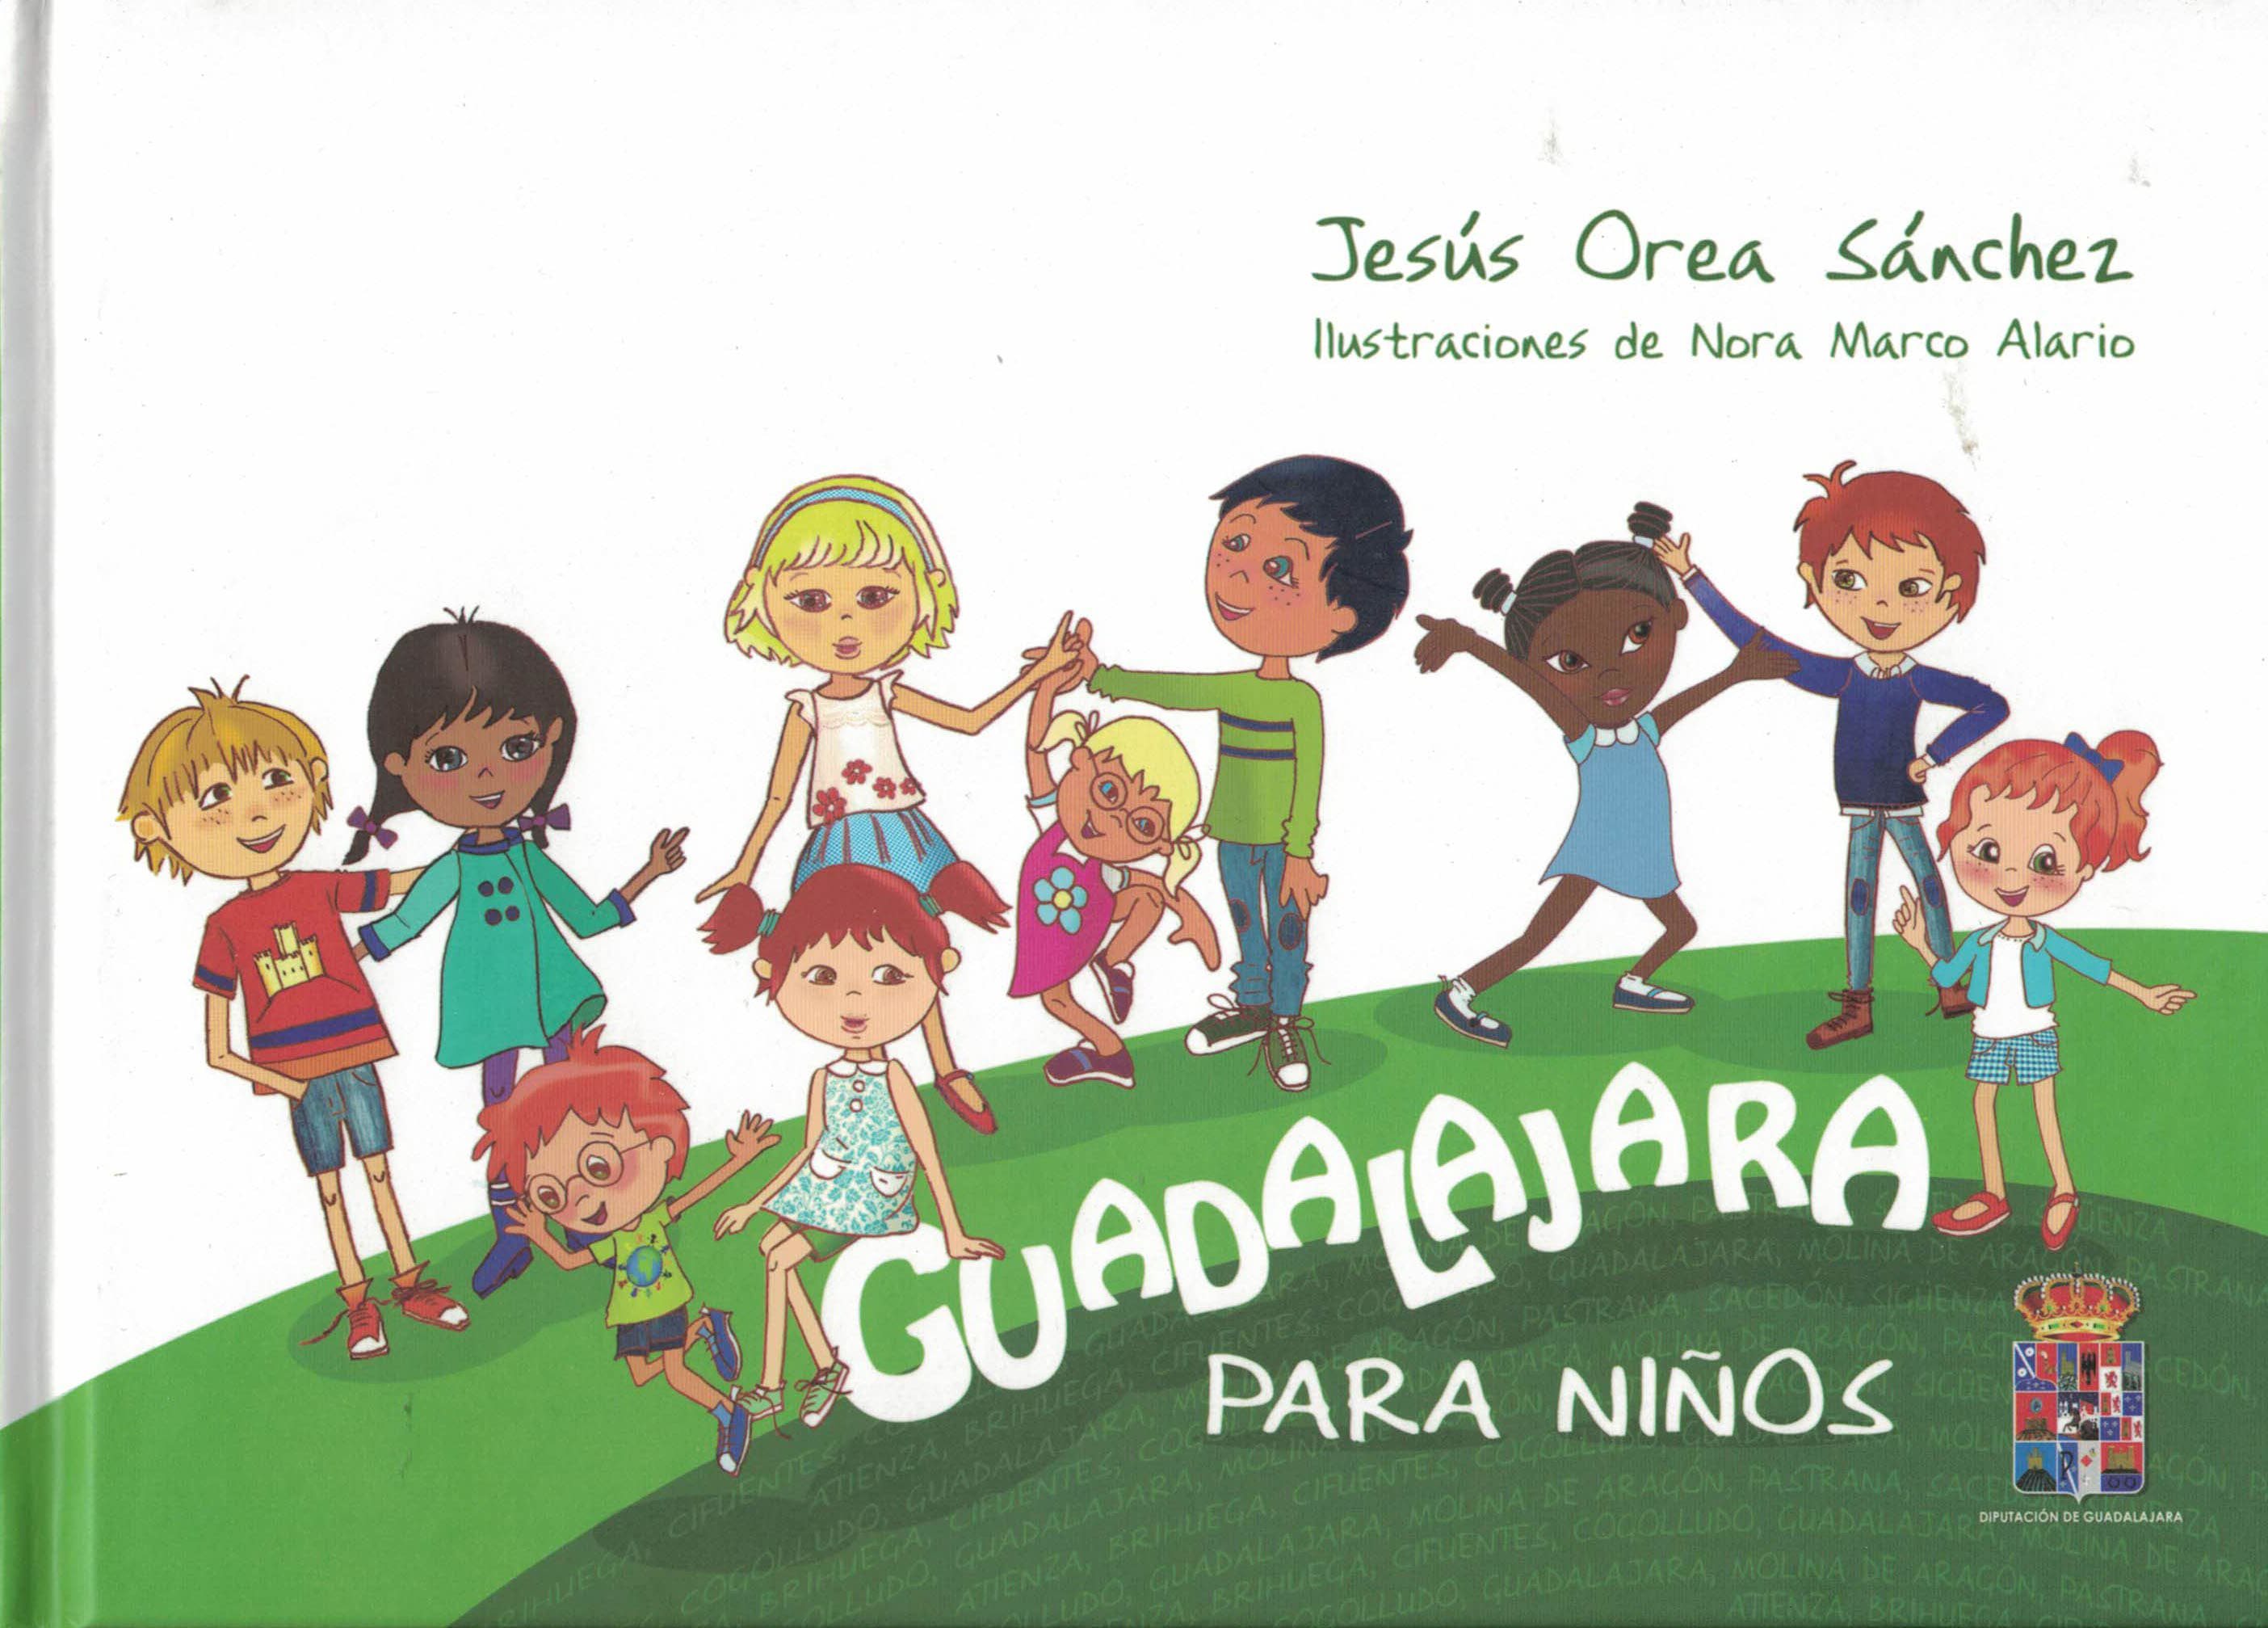 Guadalajara para niños, Jesús Orea Sánchez